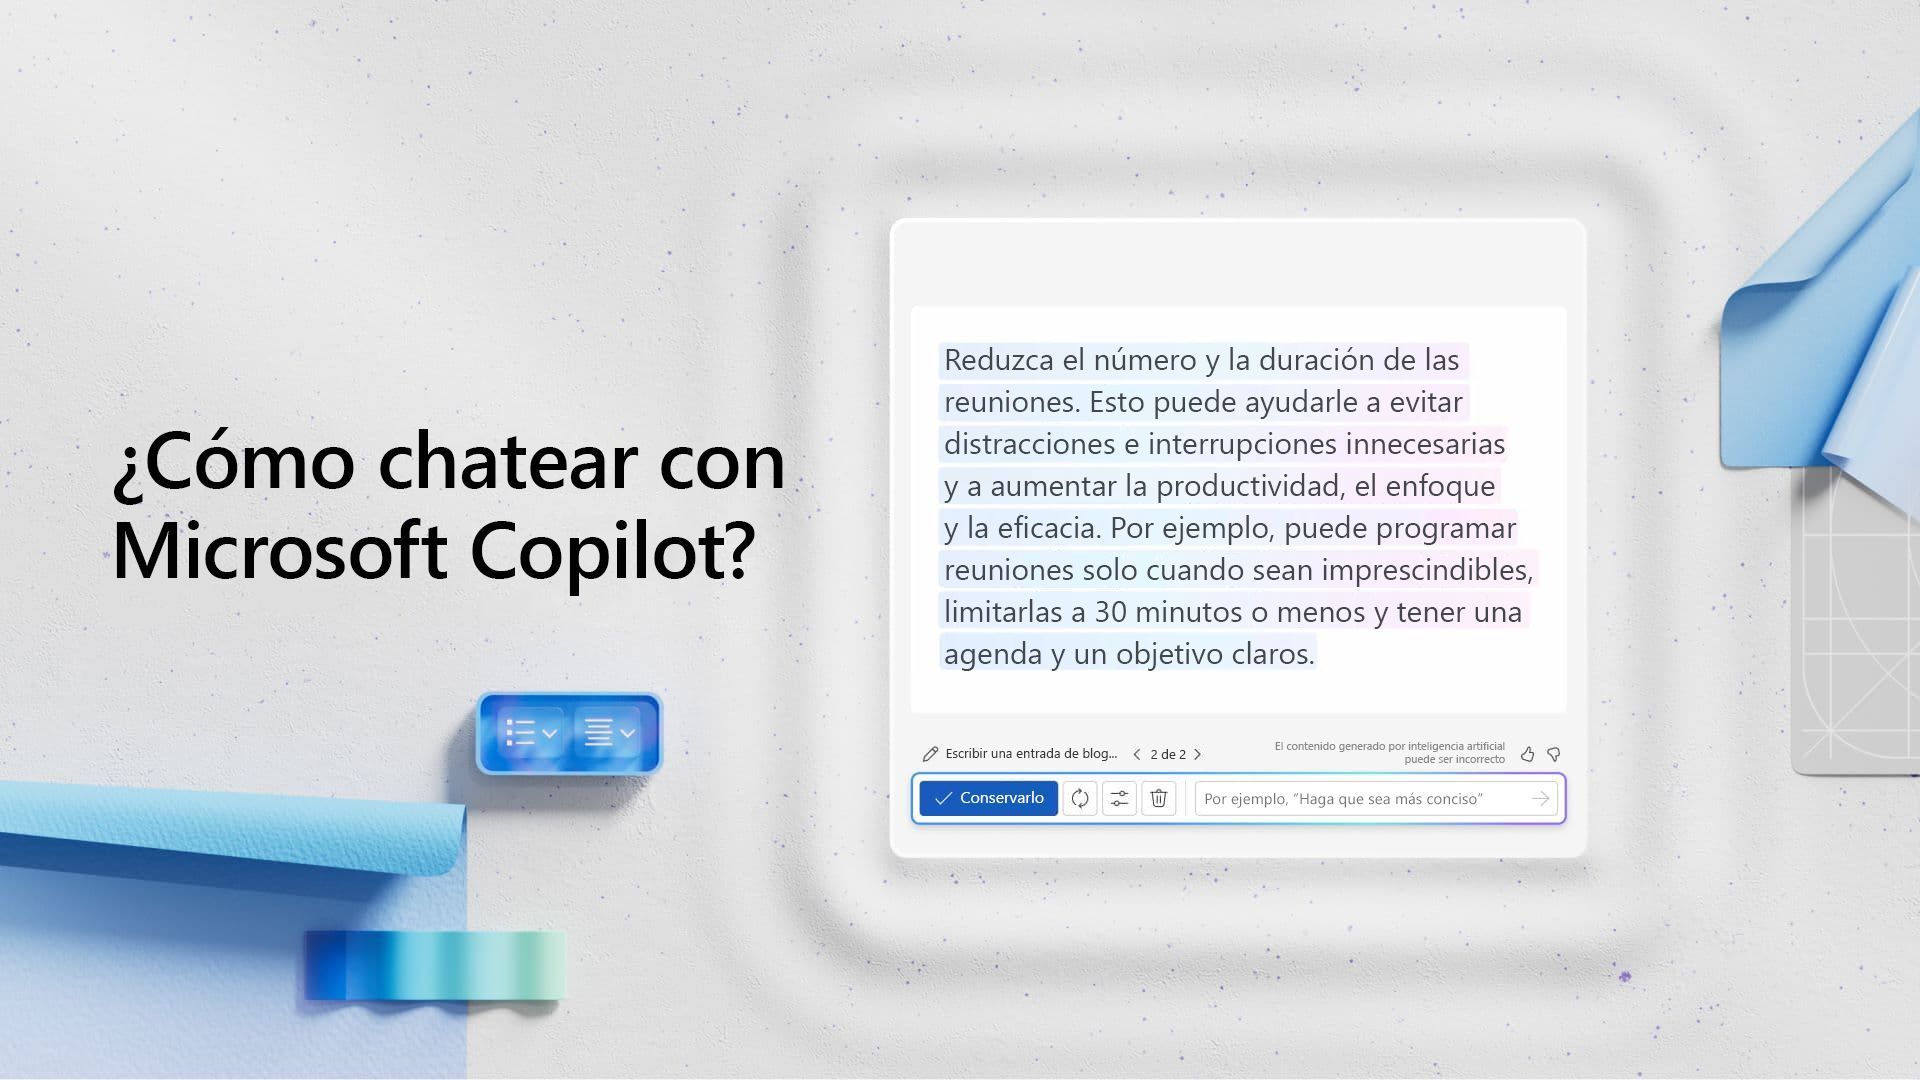 Vídeo: Cómo chatear con Microsoft Copilot